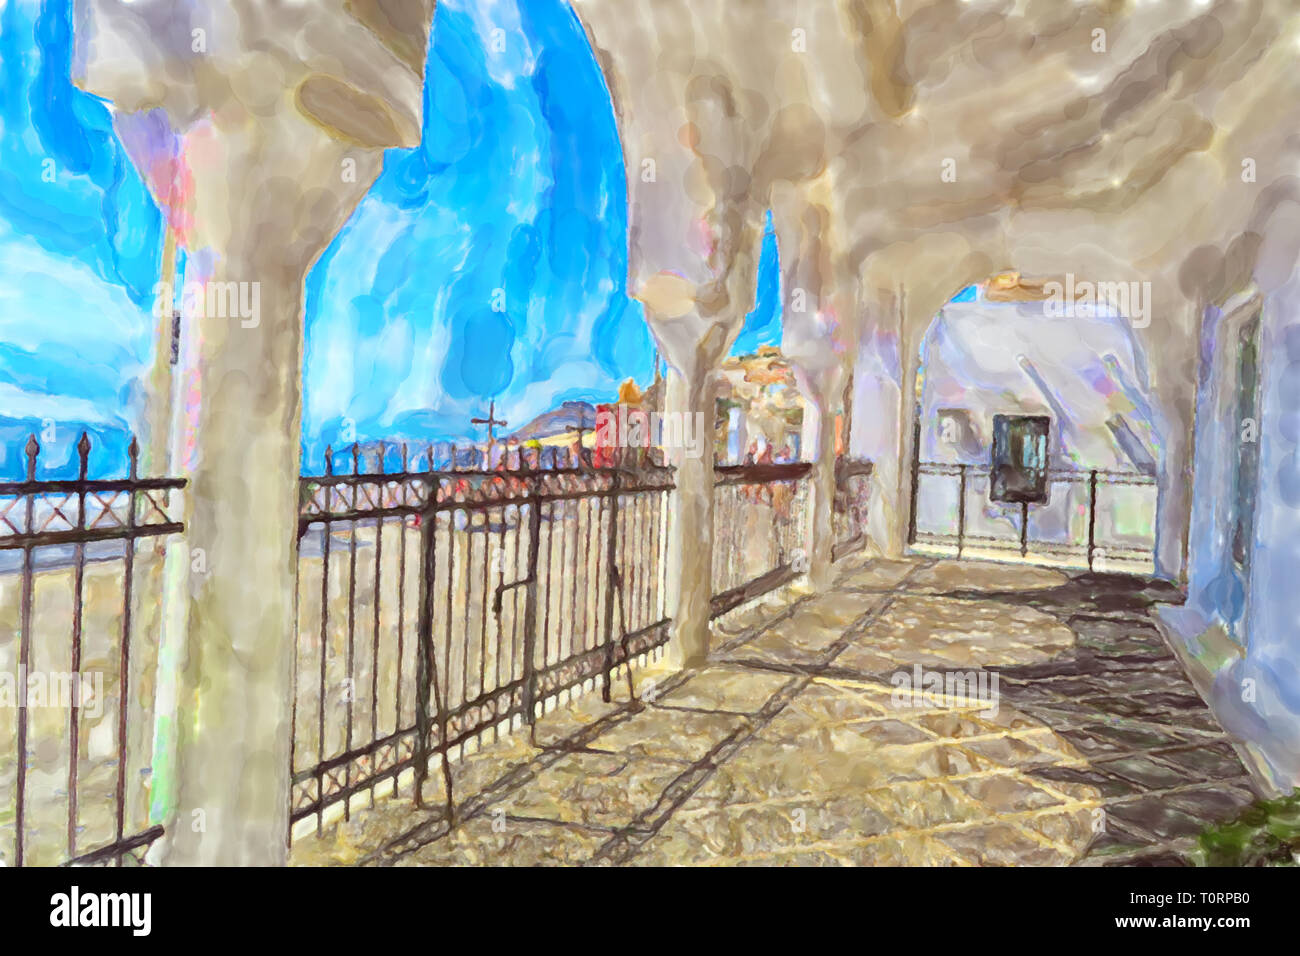 Illustration à l'aquarelle de l'île grecque de Santorin Fira Town. Grillage de Cathédrale Orthodoxe métropolitaine. Banque D'Images